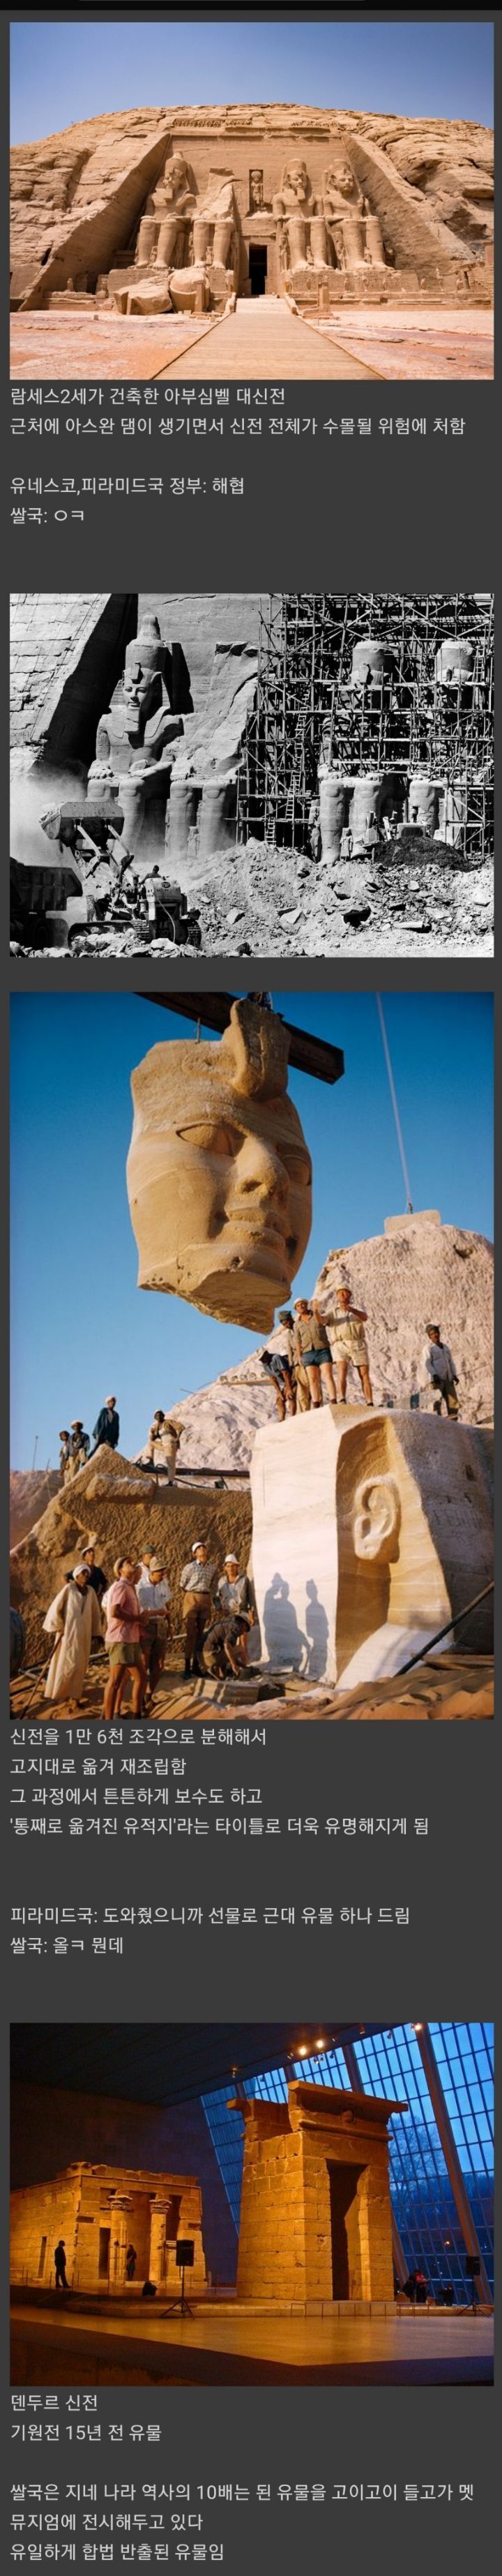 유일하게 합법적으로 반출된 이집트 유물